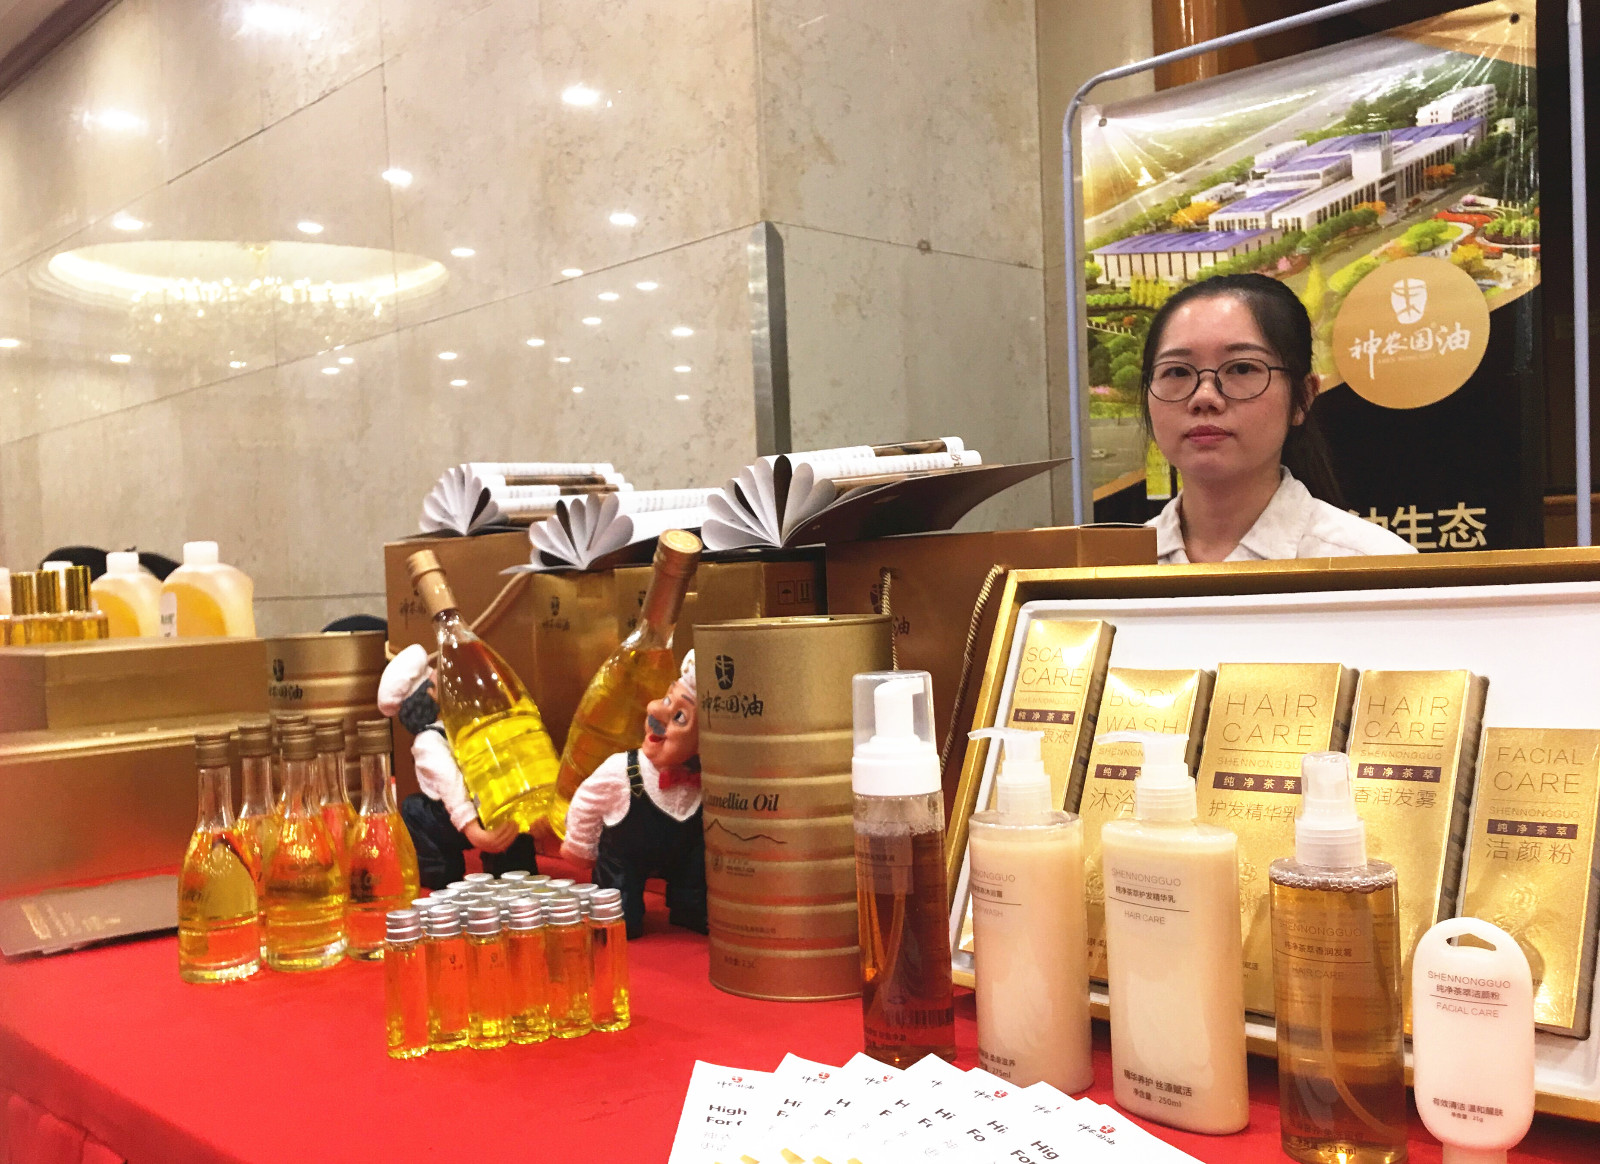 耒阳市将油茶列为经济转型的支柱产业之一进行发展，推出以油茶为原材料的系列产品。周辉霞摄 